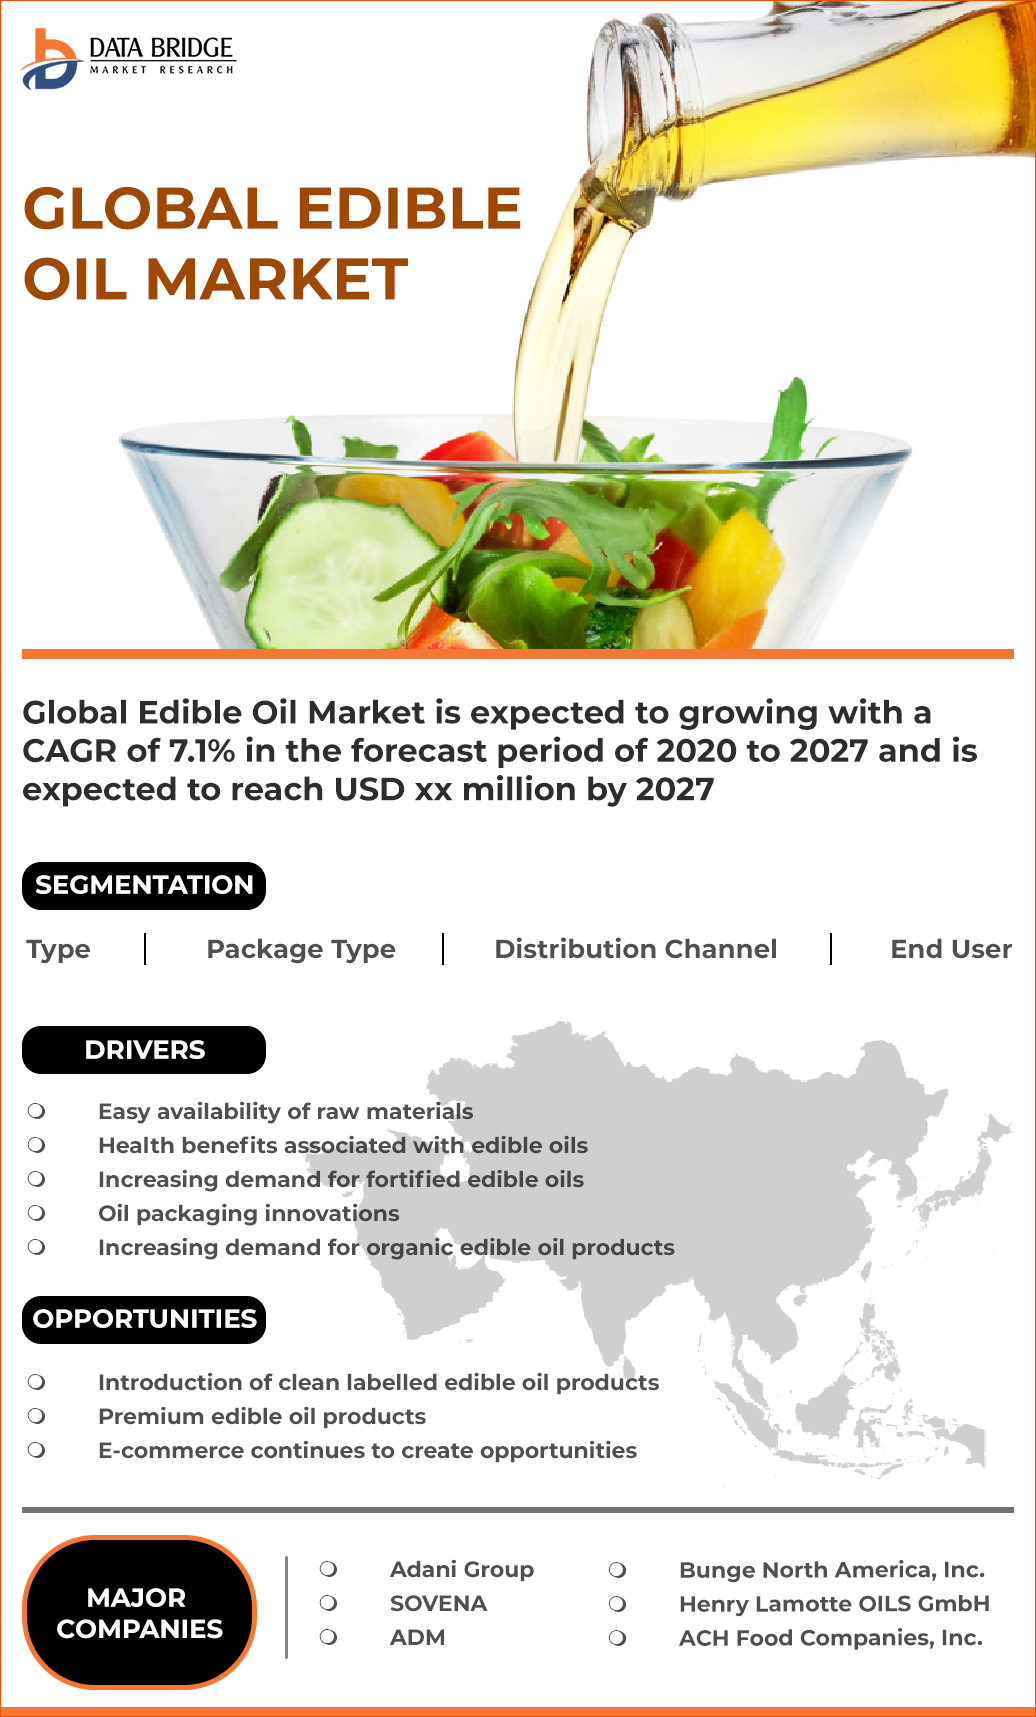 Edible Oil Market